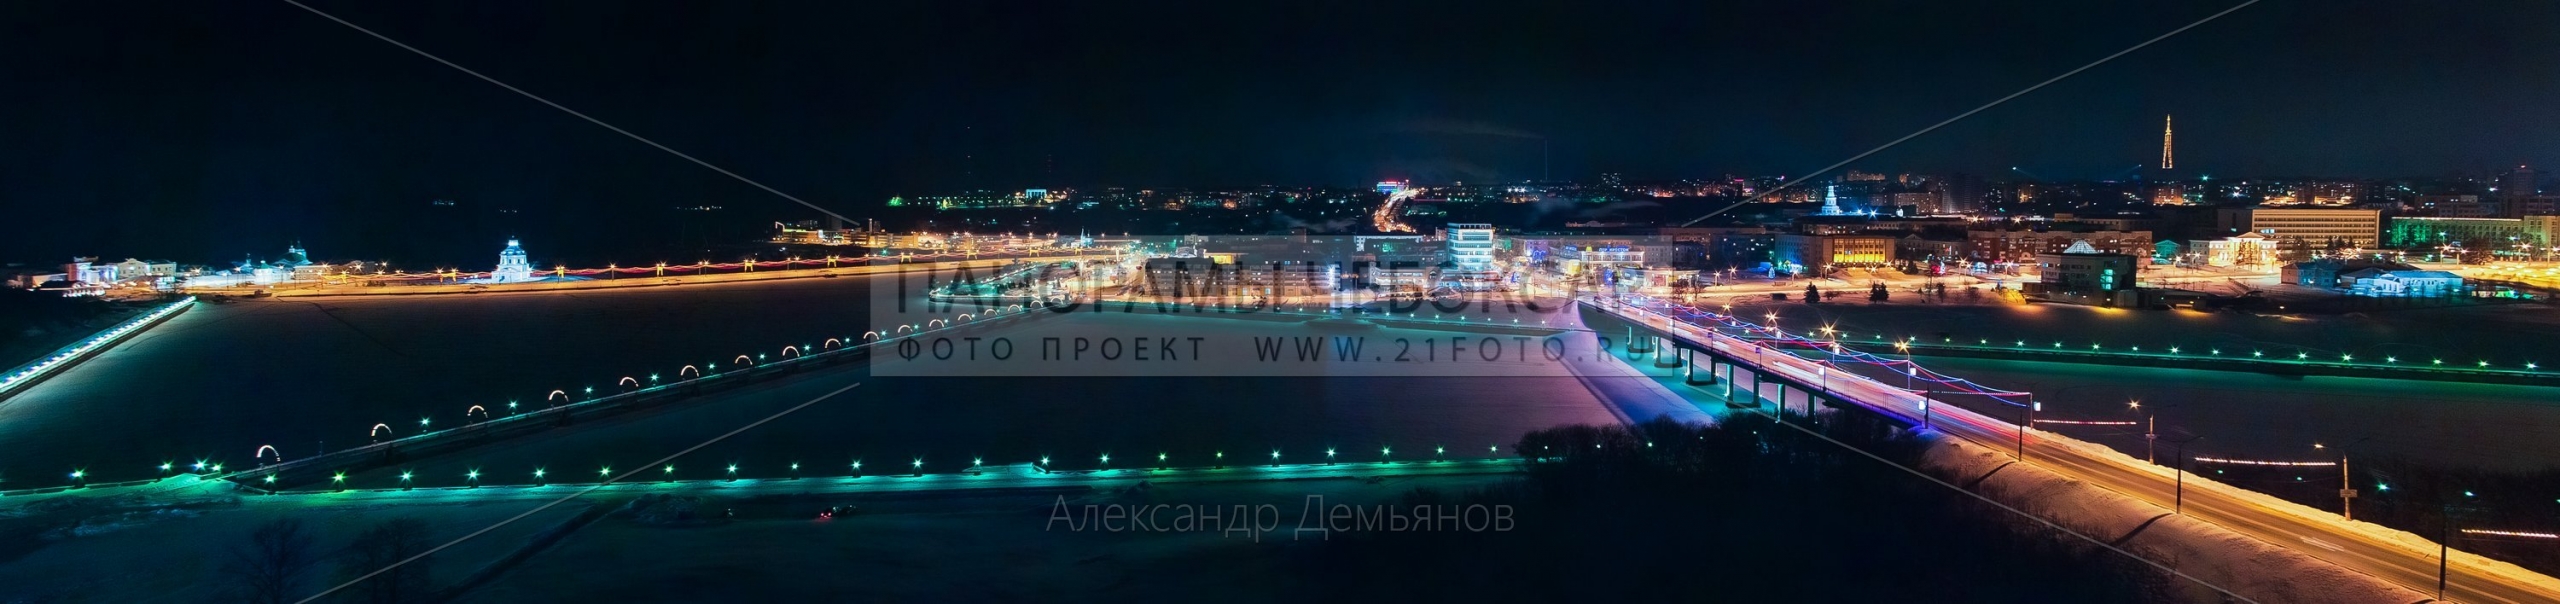 Фото-панорама Чебоксарского ночного залива зимой, вид на московский мост, дом мод и дорогу к храму